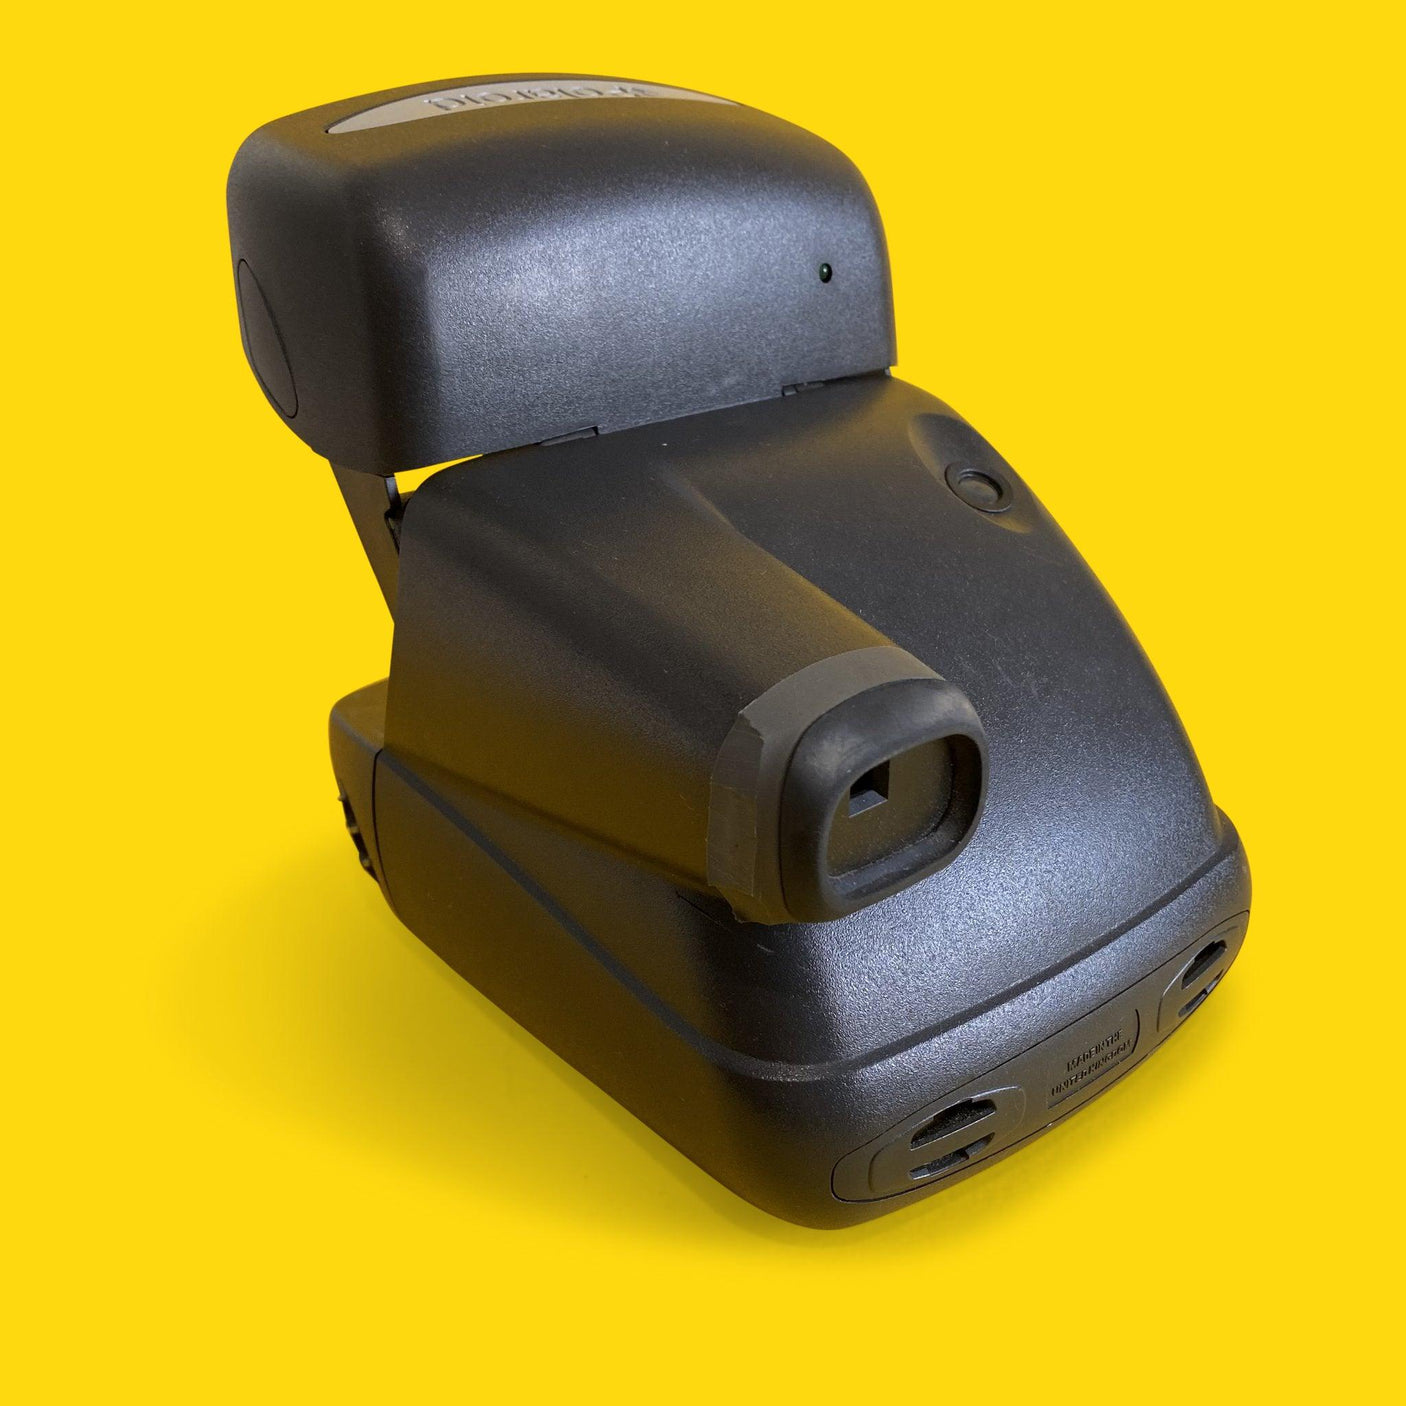 Retro Polaroid 600 Instant Film Camera